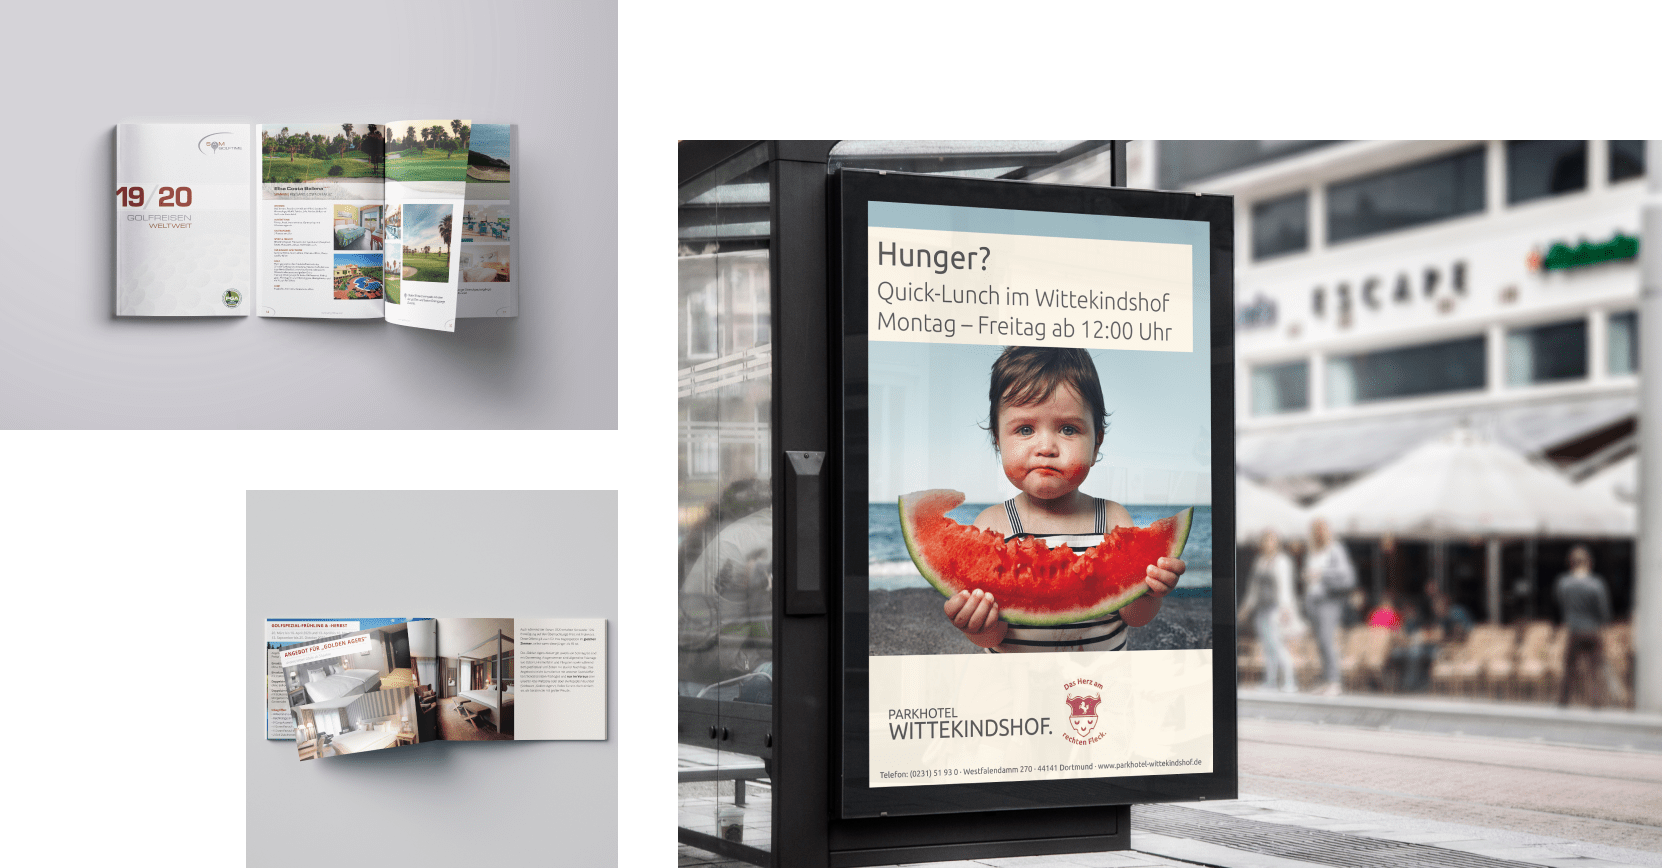 Professionelles Design und Grafik in integrierter Marketingkampagne mit Werbemagazin und Out of Home Werbung